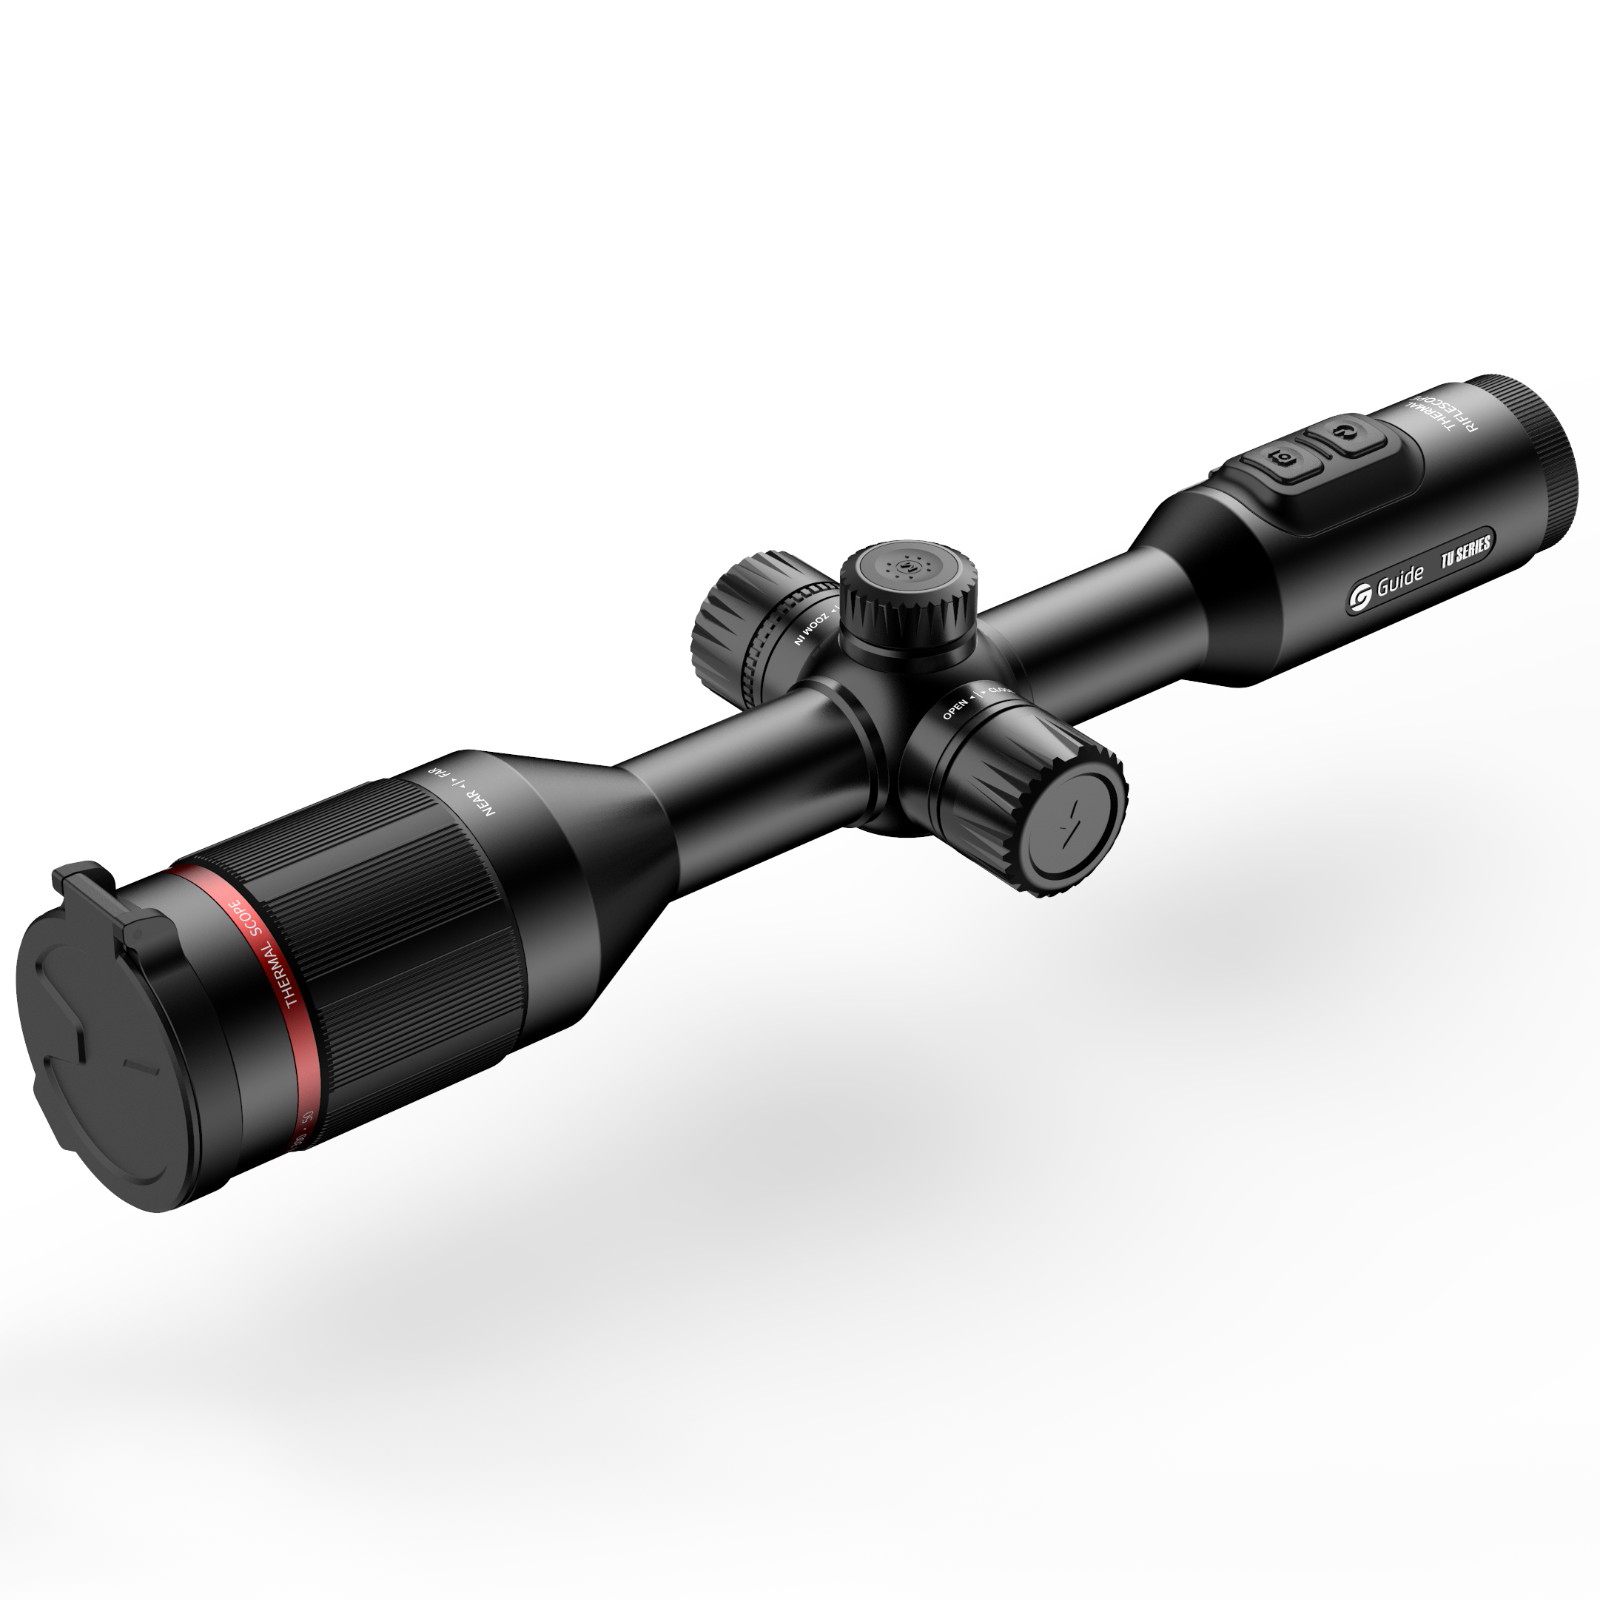 高德智感TU650瞄准镜式红外热像仪图片